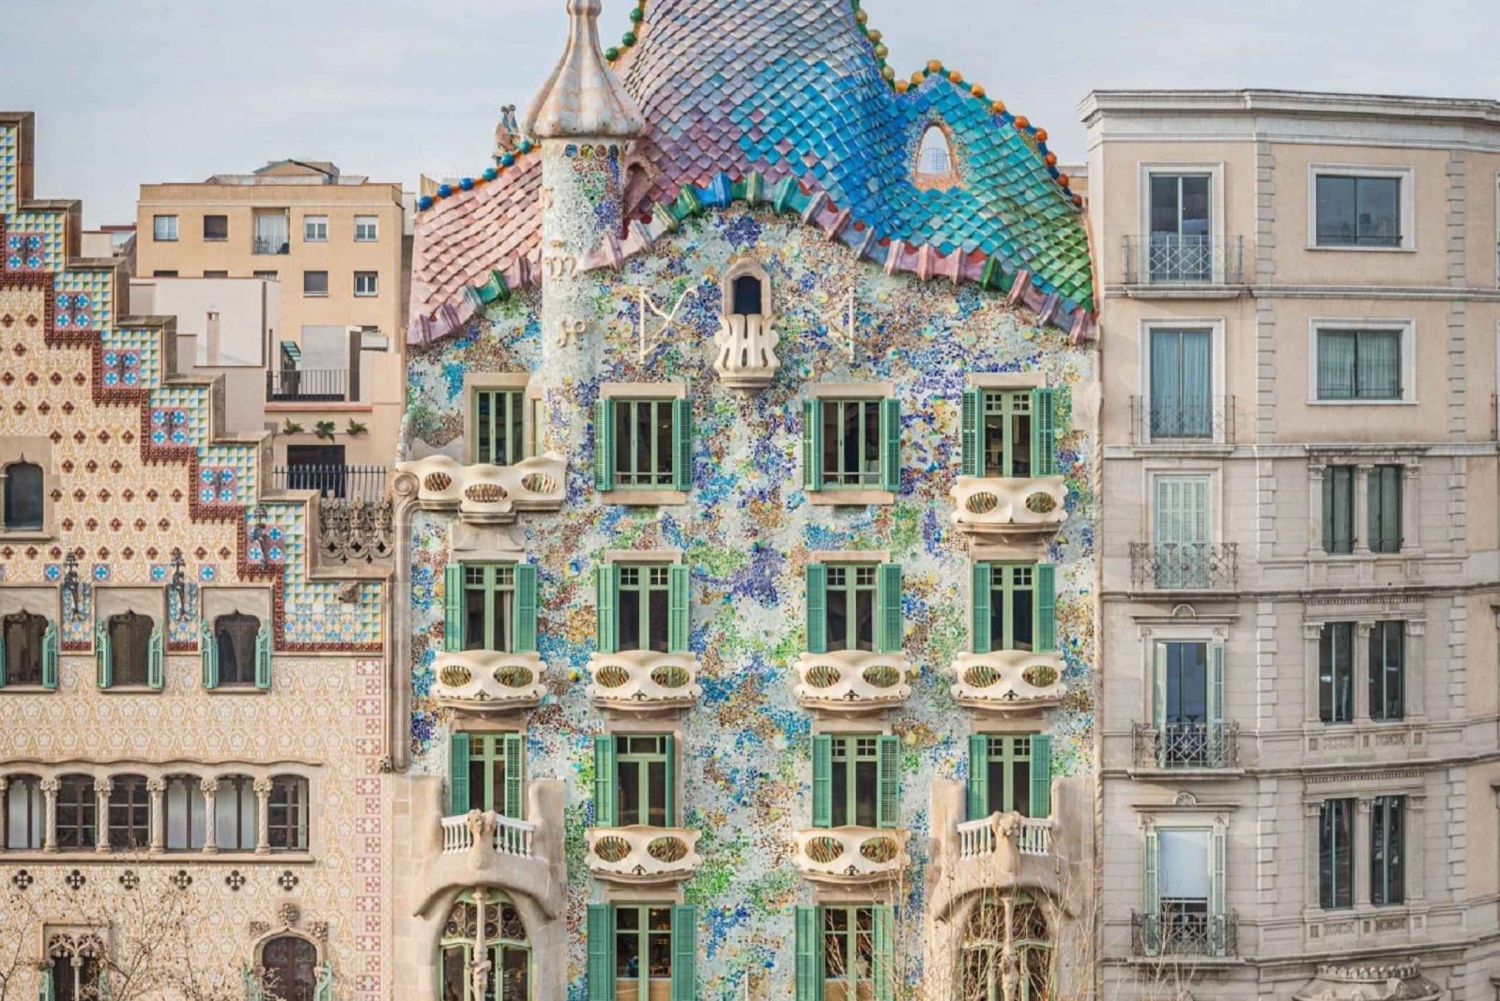 Barcelona: Visita guiada rápida à Casa Batlló